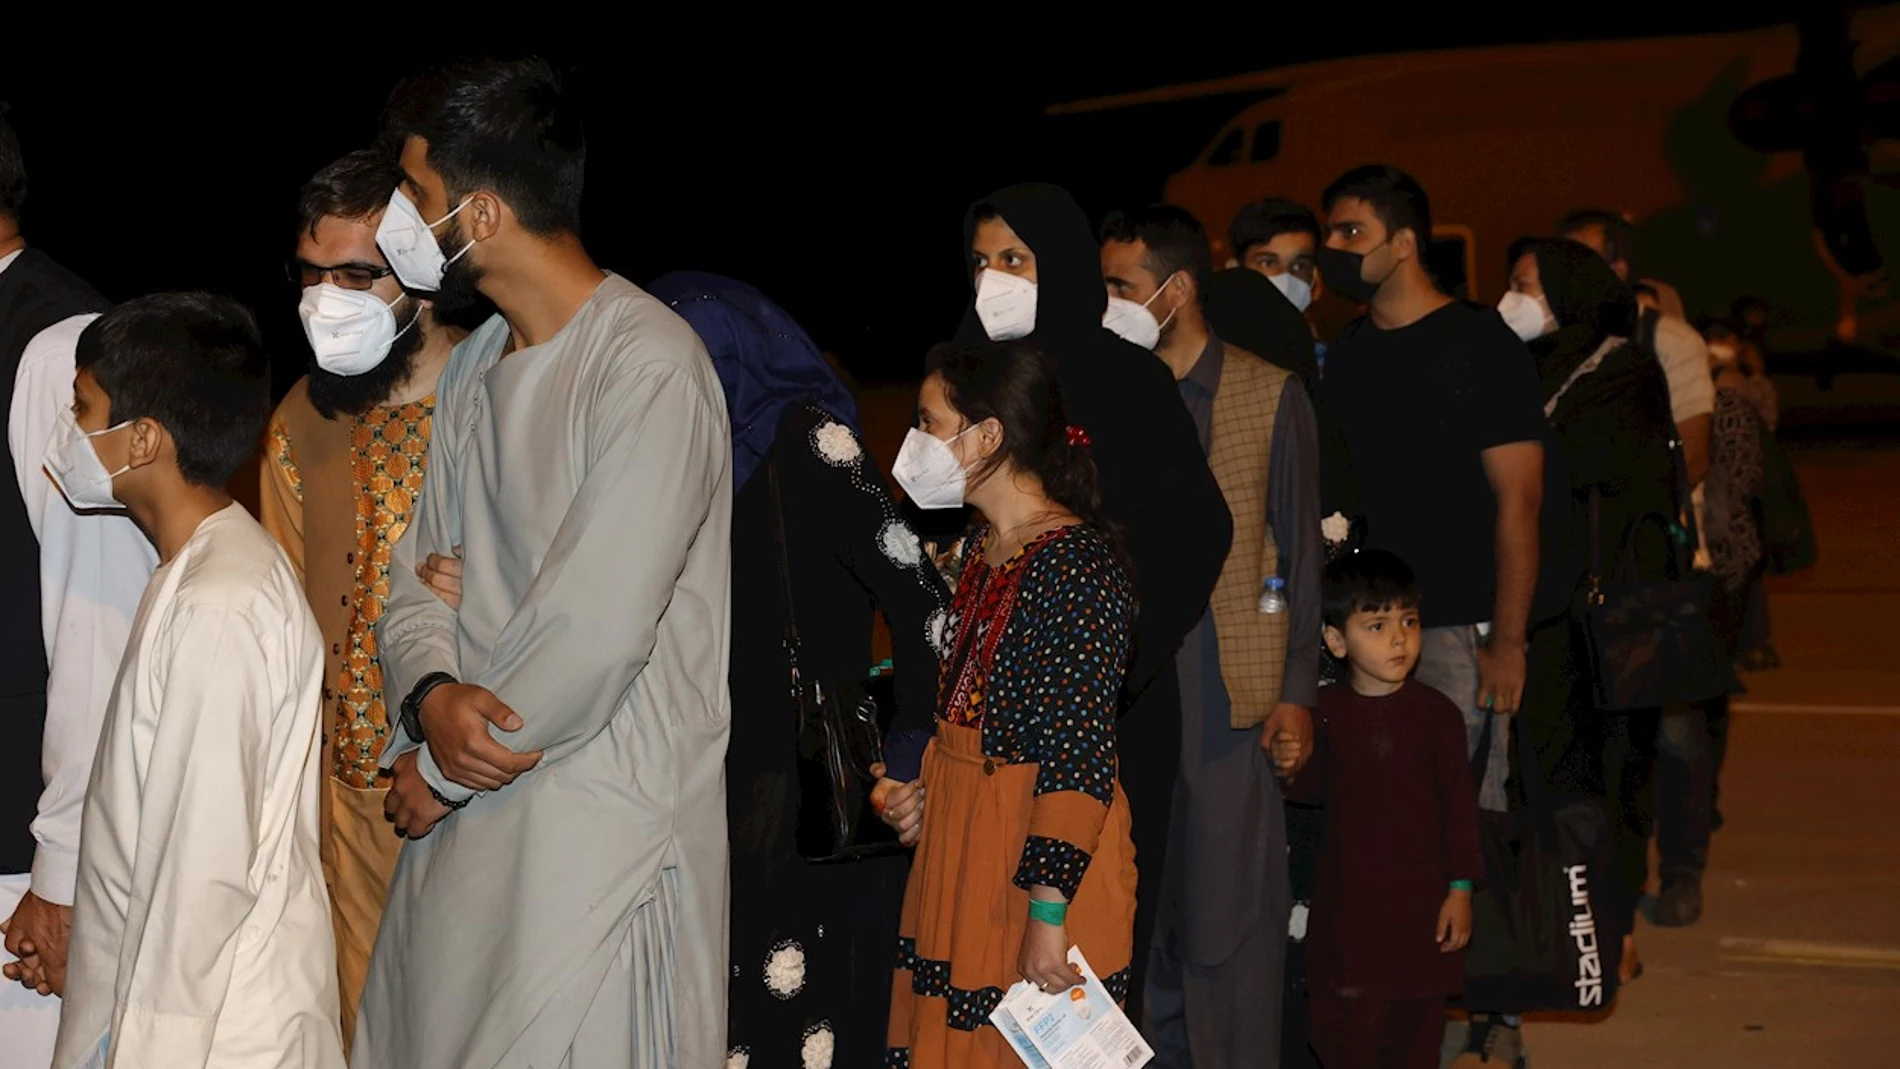 El Gobierno acogerá en hoteles a afganos repatriados en España